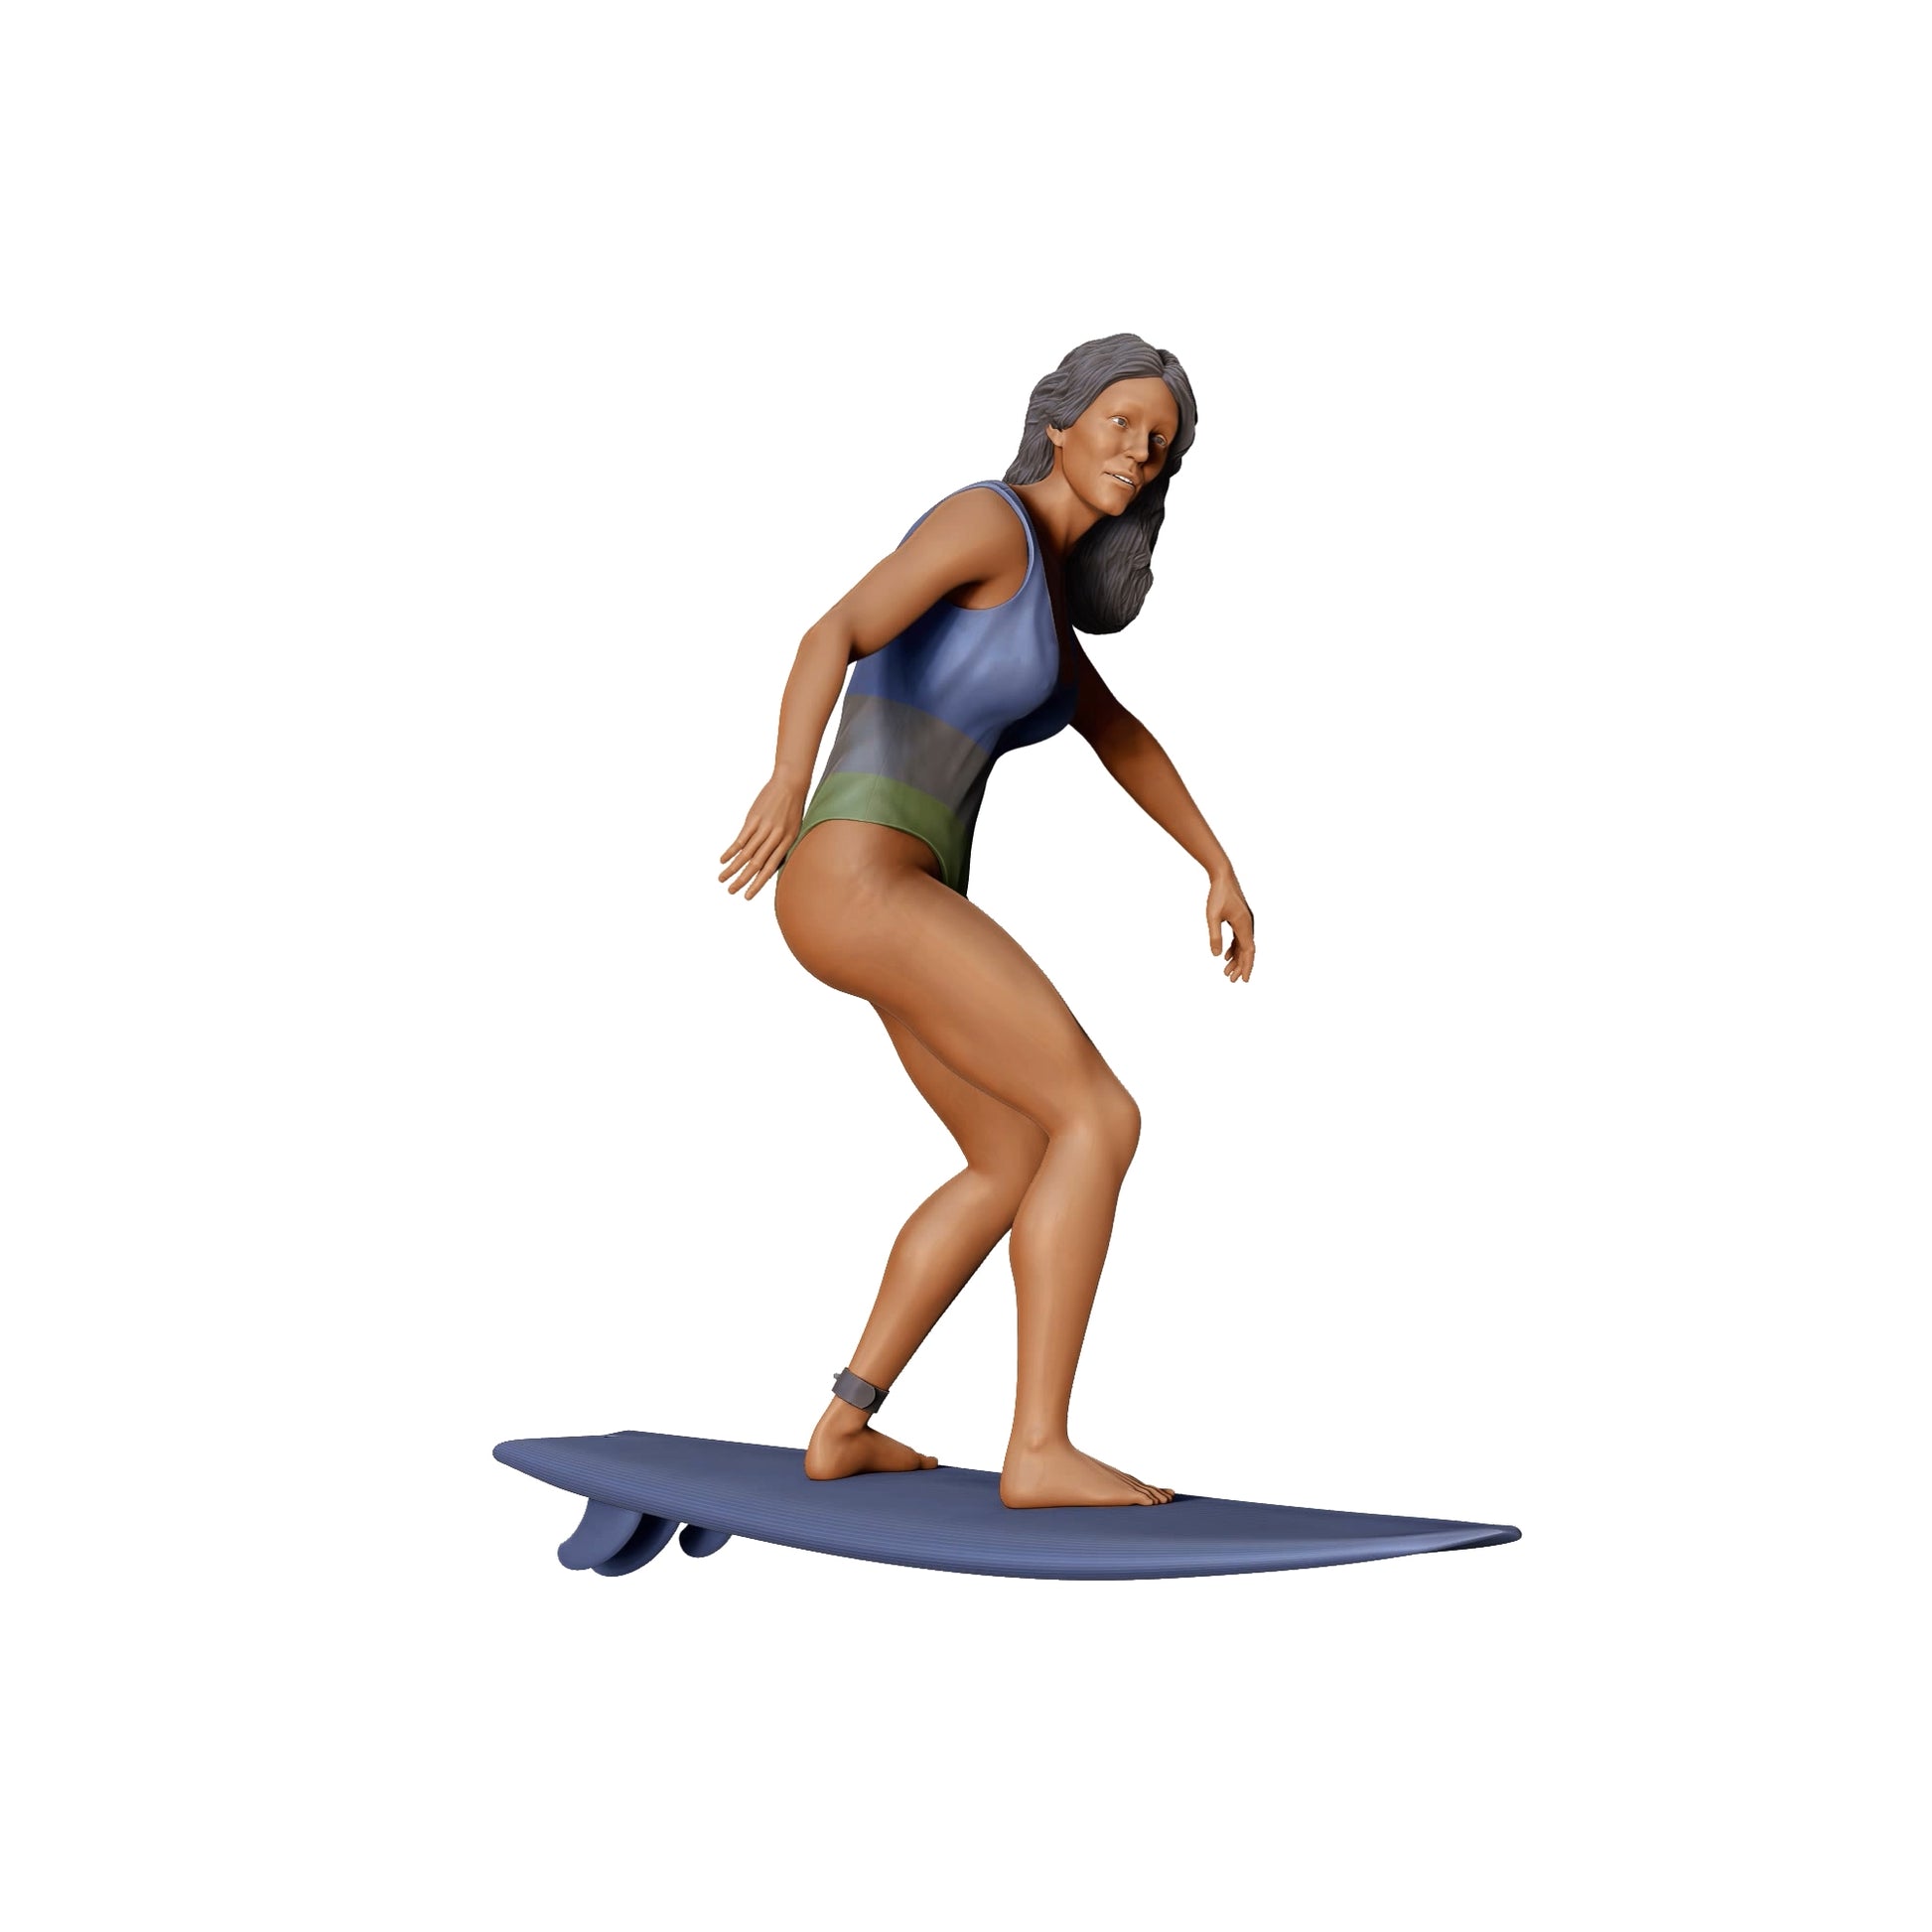 Produktfoto Diorama und Modellbau Miniatur Figur: Wellenreiterin: Surferin auf Surfbrett am Meer